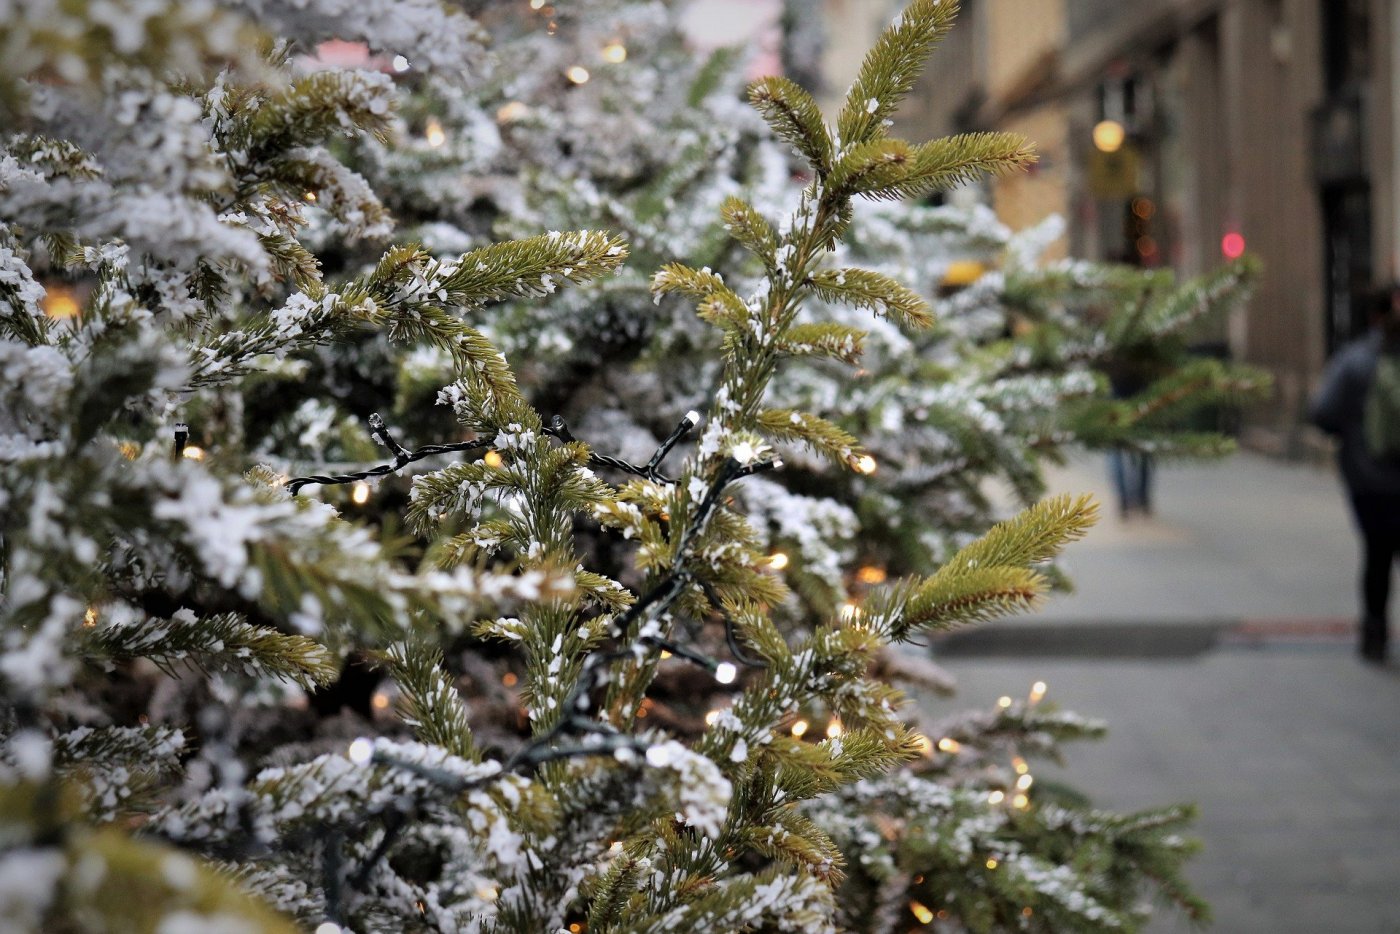 Na pierwszym planie choinka świąteczna przypruszona białym śniegiem oraz ozdobiona lampkami choinkowymi w kolorze ciepłego światła. W tle rozmazana, bliżej nieznana ulica.